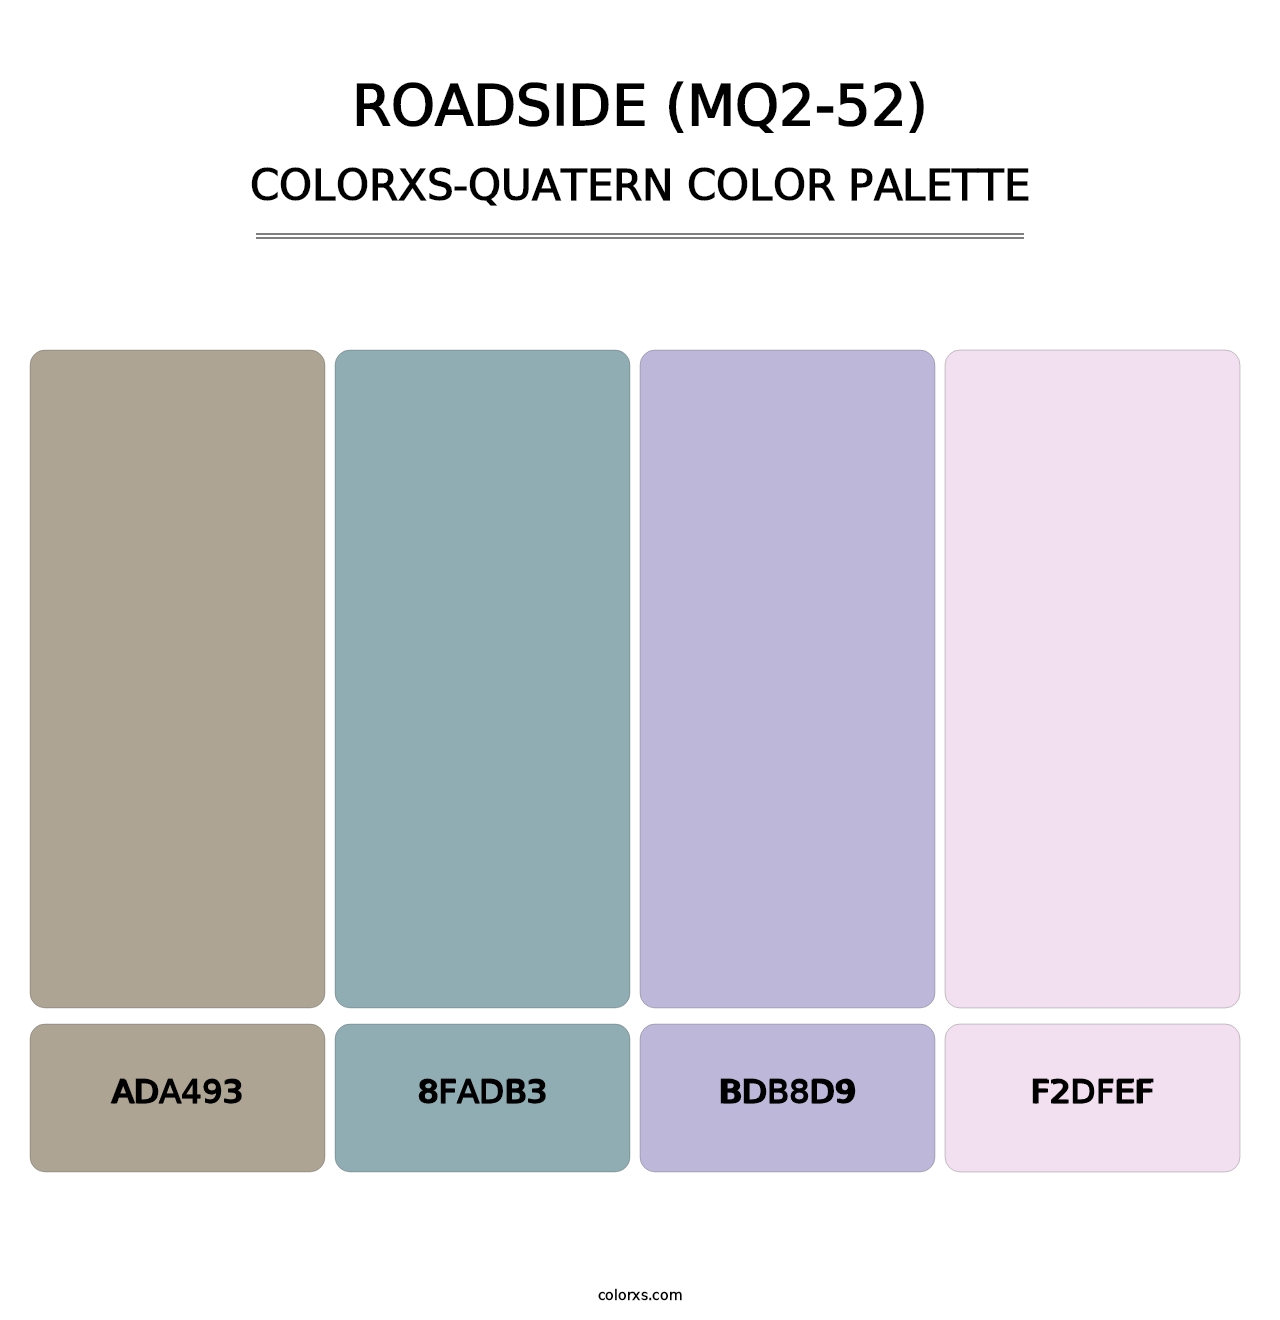 Roadside (MQ2-52) - Colorxs Quatern Palette